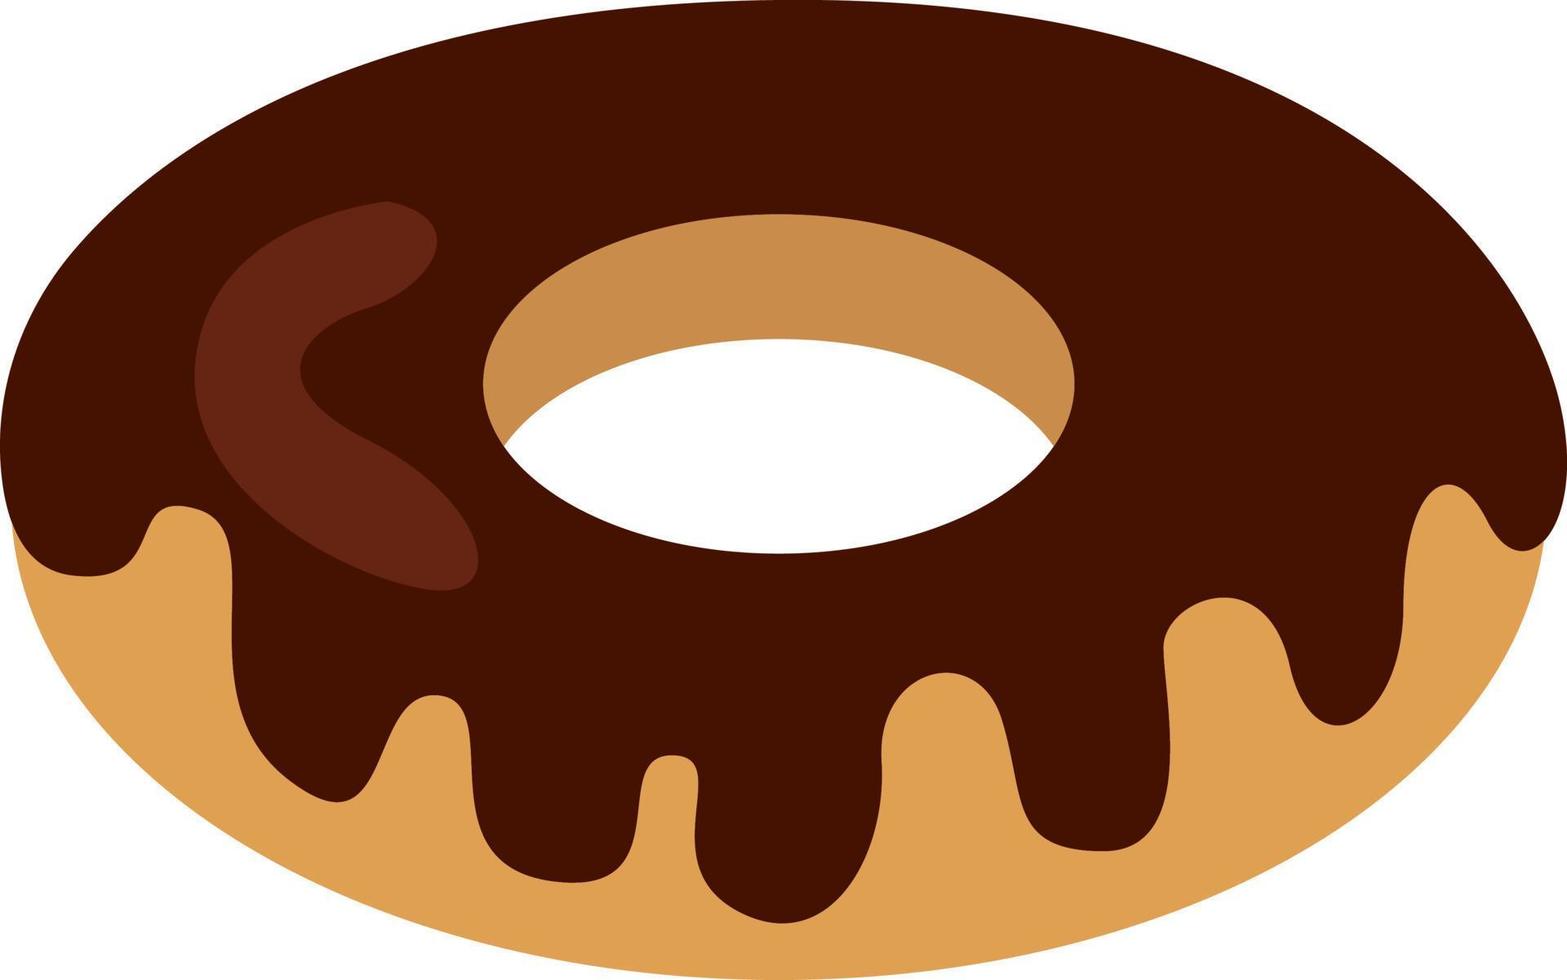 Donut glaseado de chocolate, ilustración, vector sobre fondo blanco.